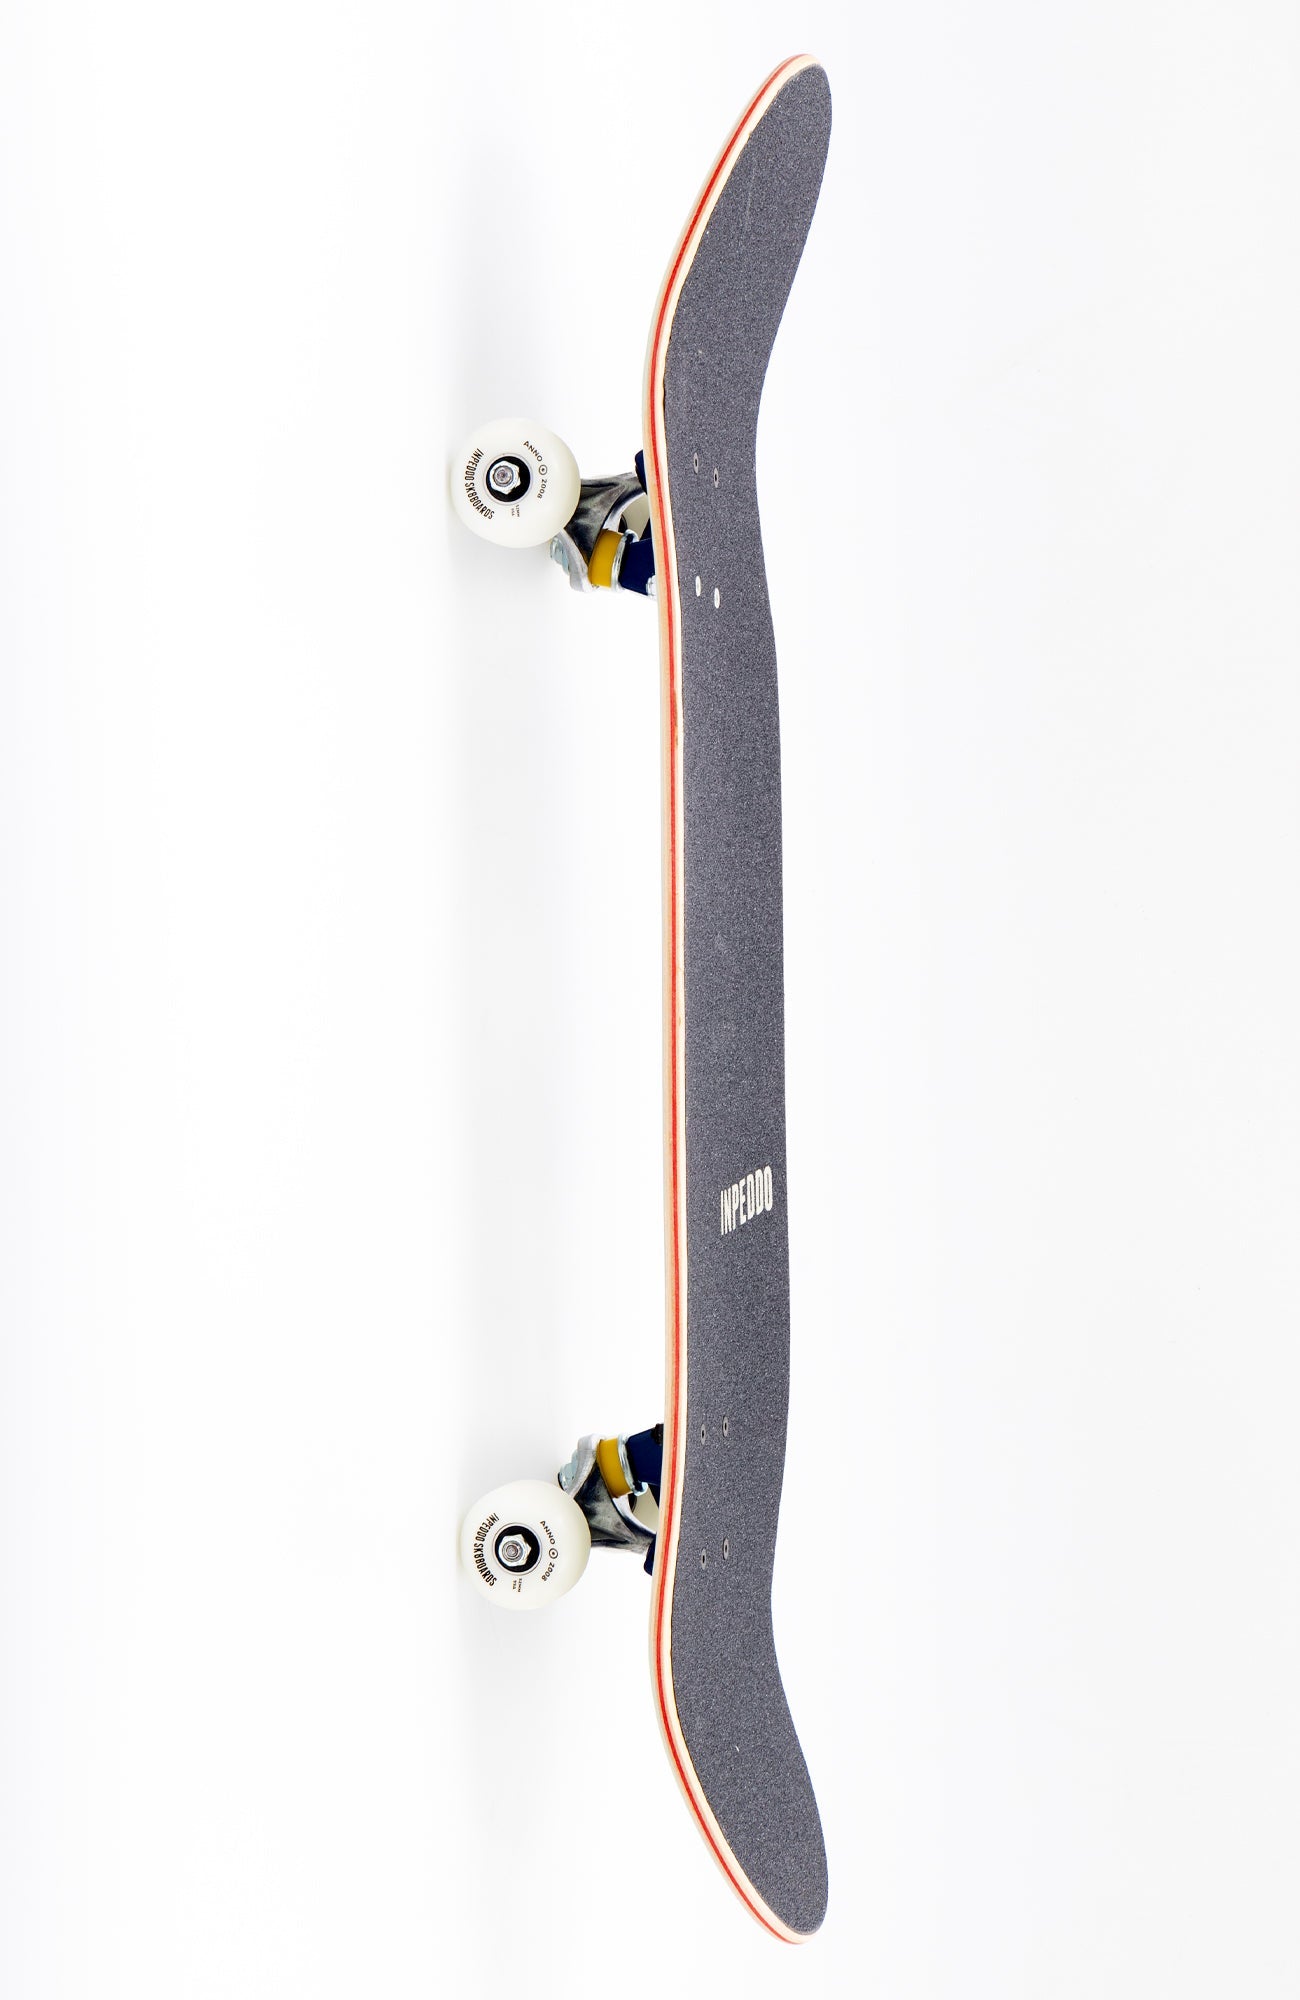 Smarty Black White - Skateboard Premium Complete